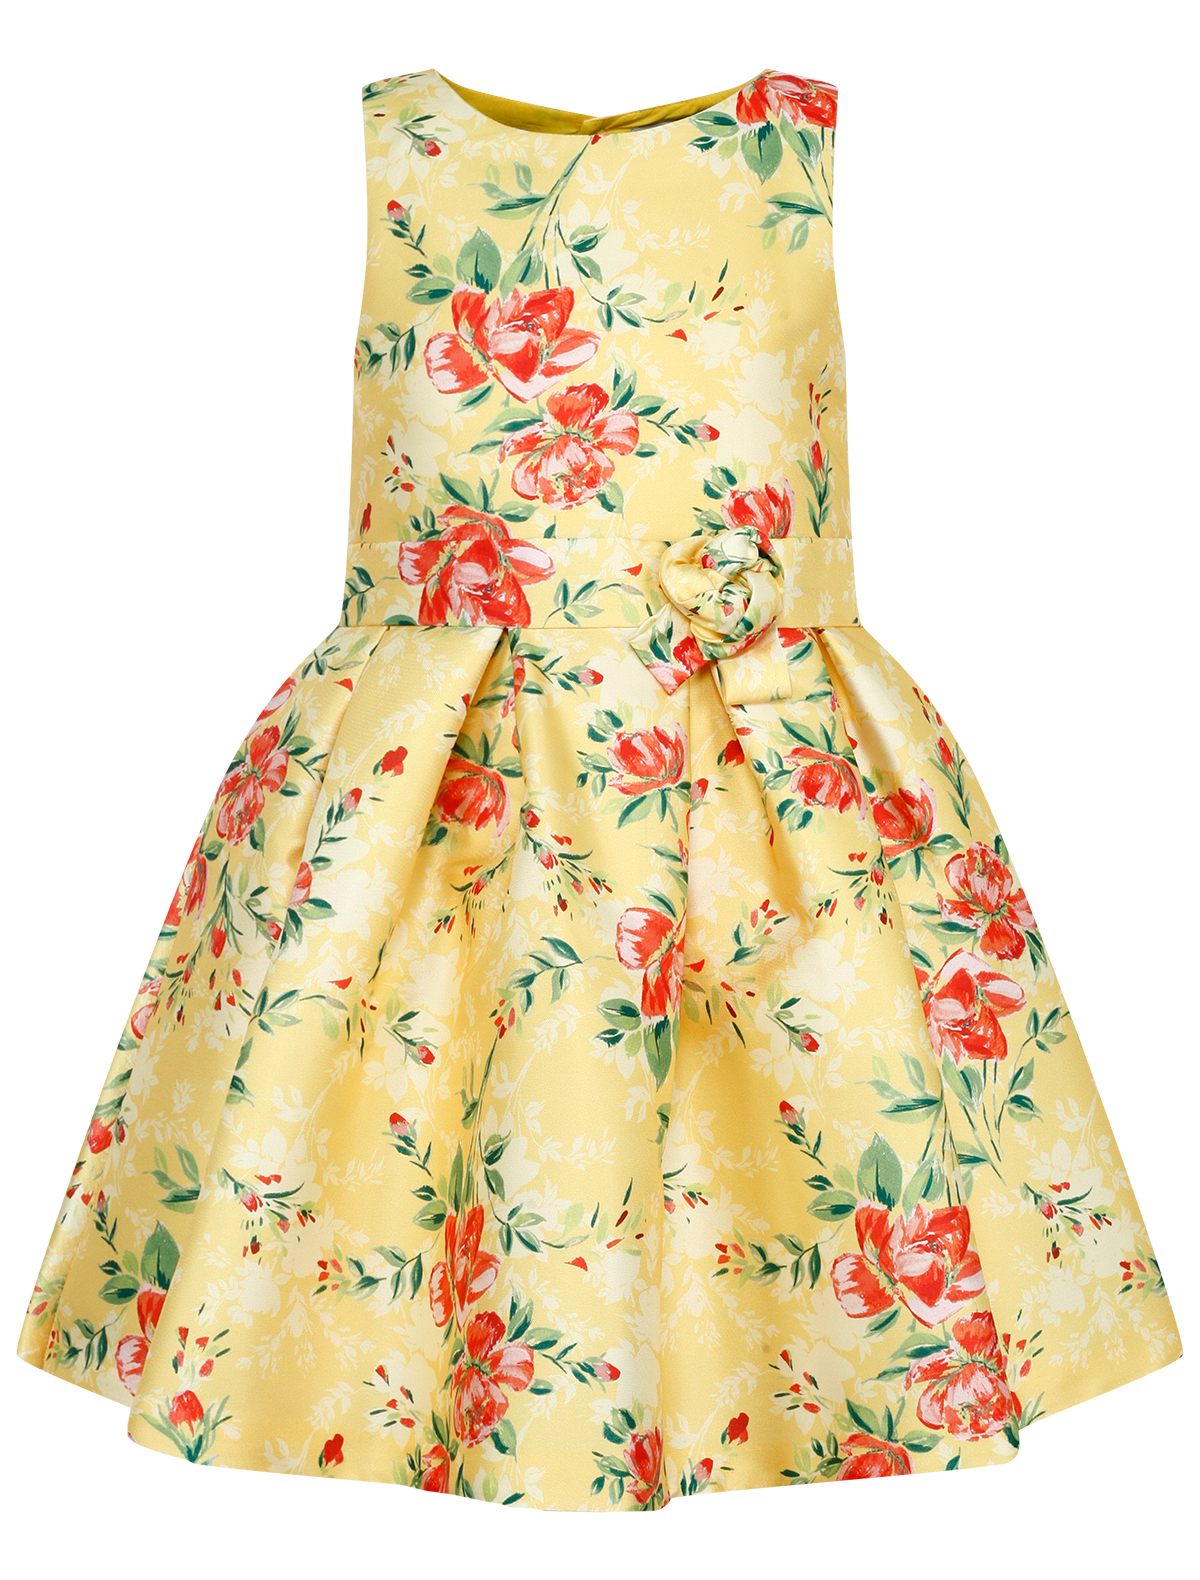 платье с открытой спиной abel & lula для девочки, желтое